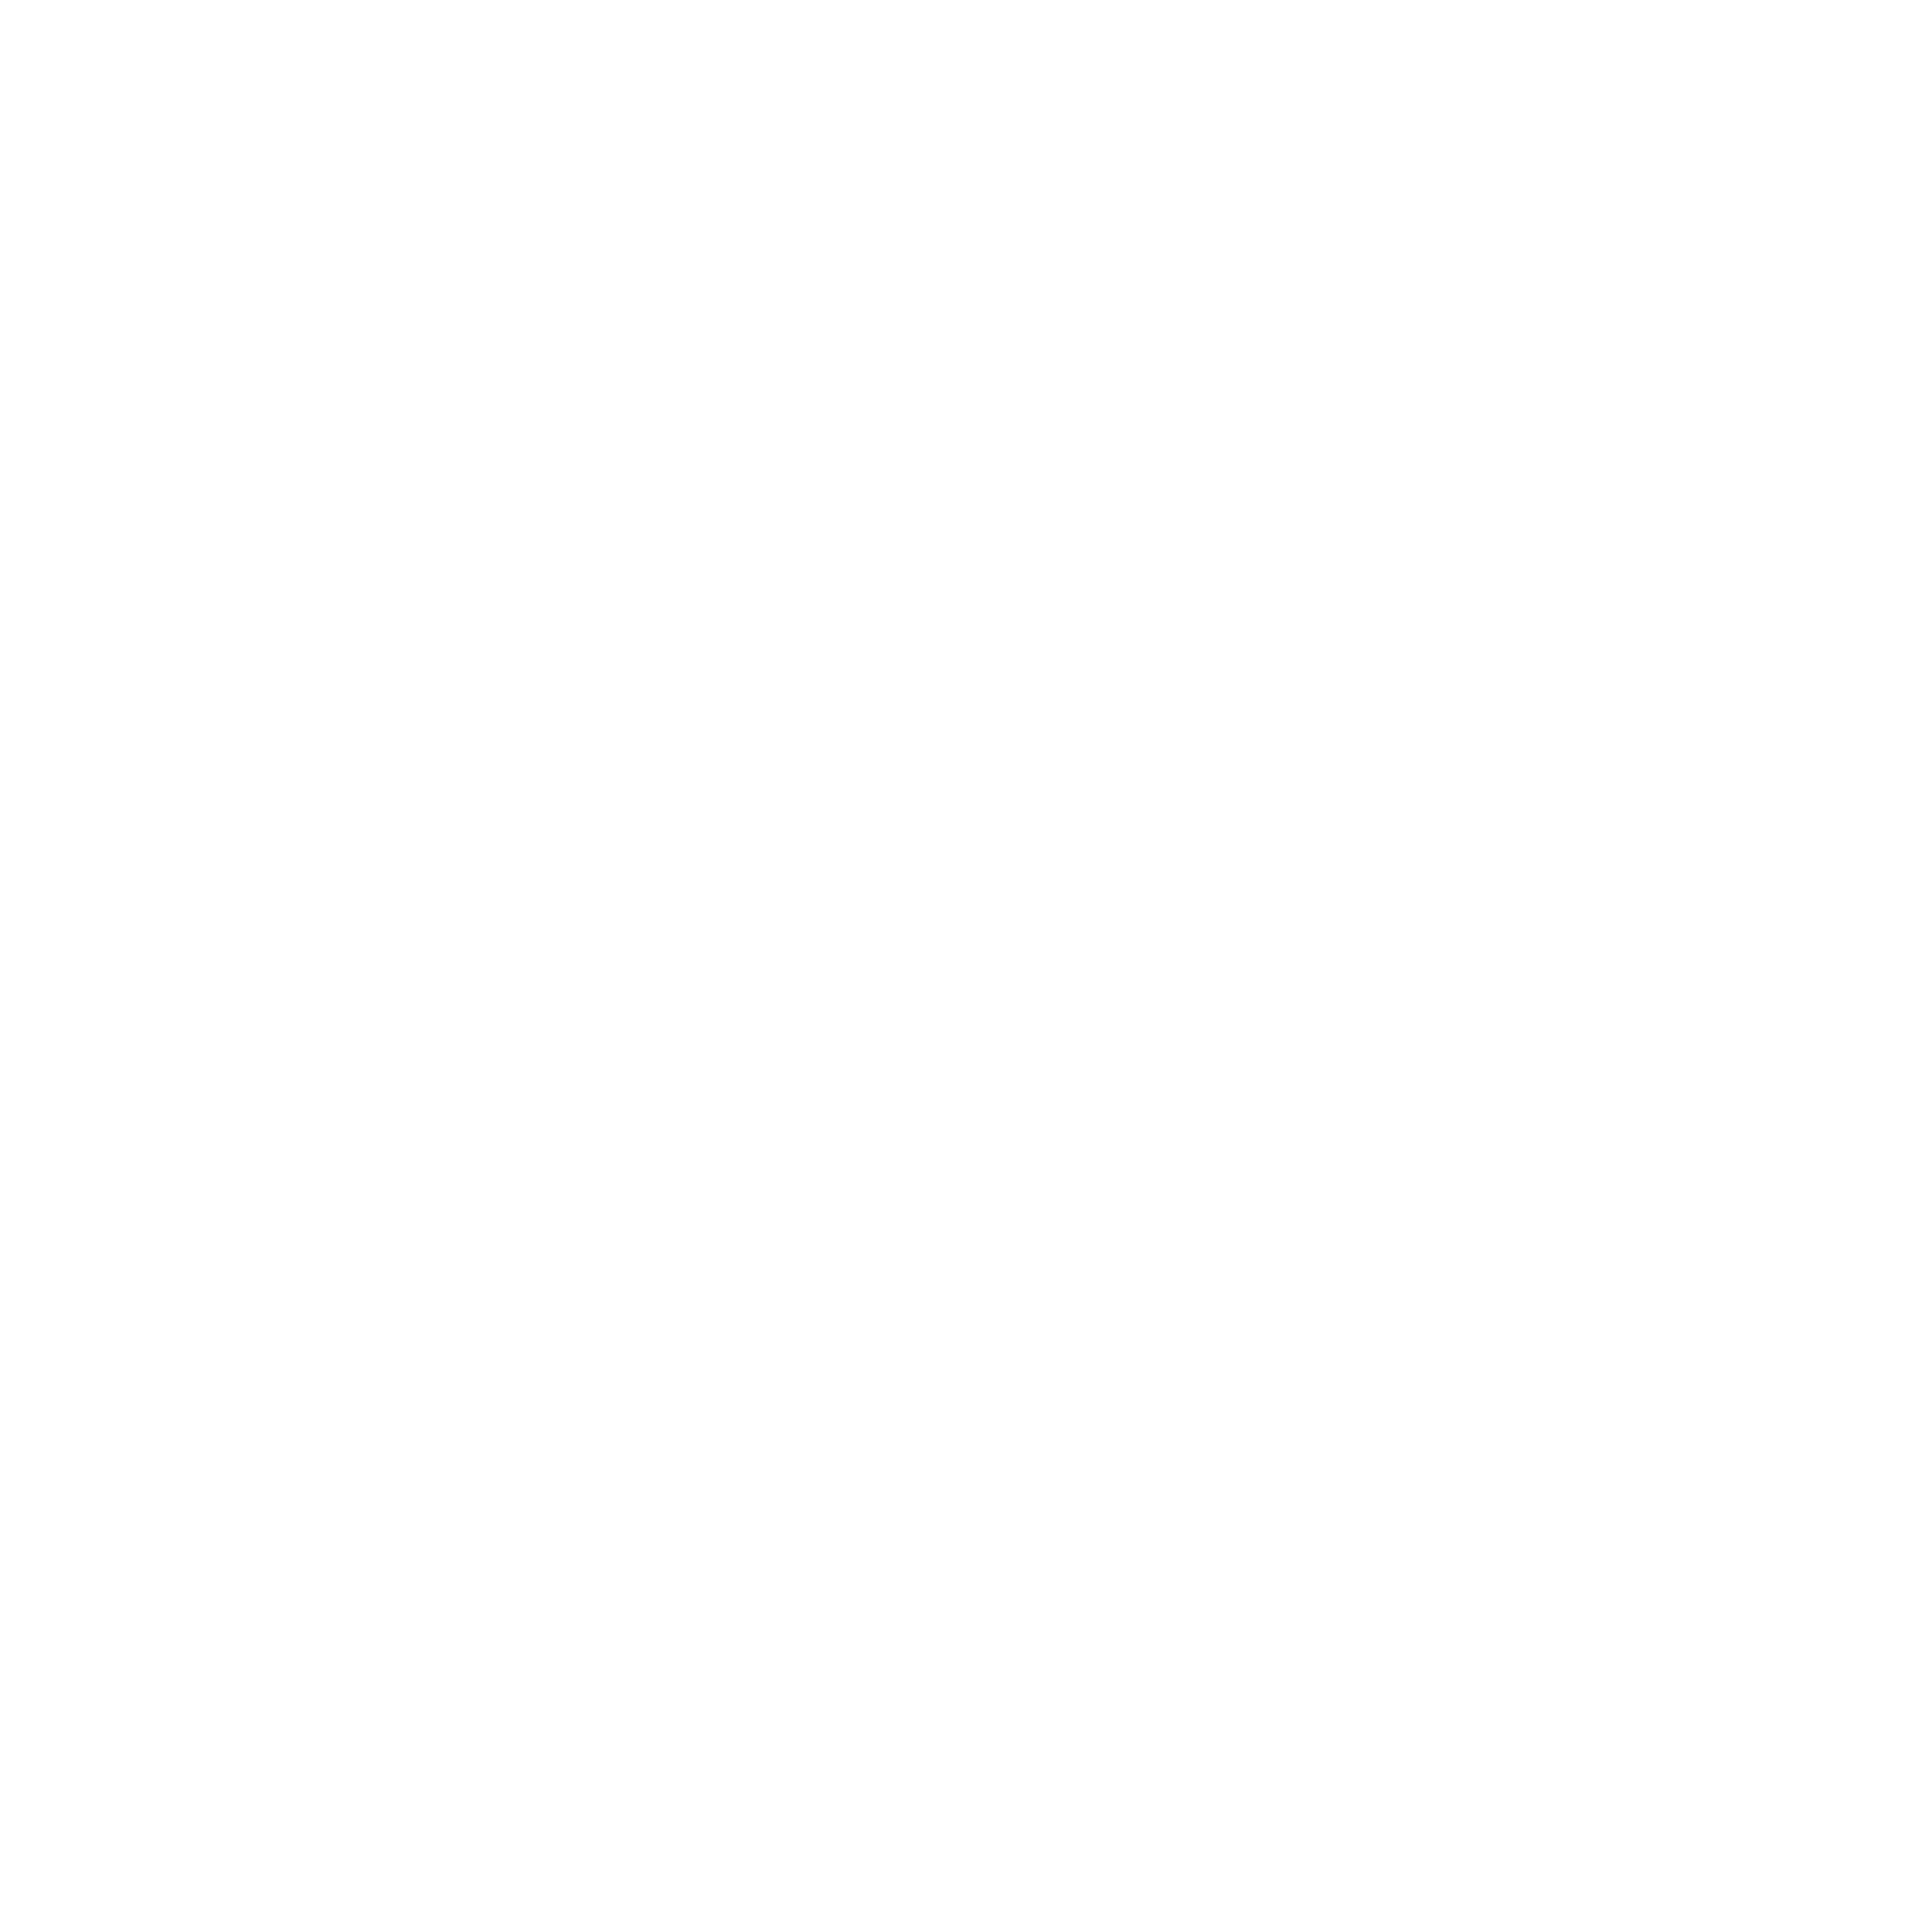 Nora Sänger